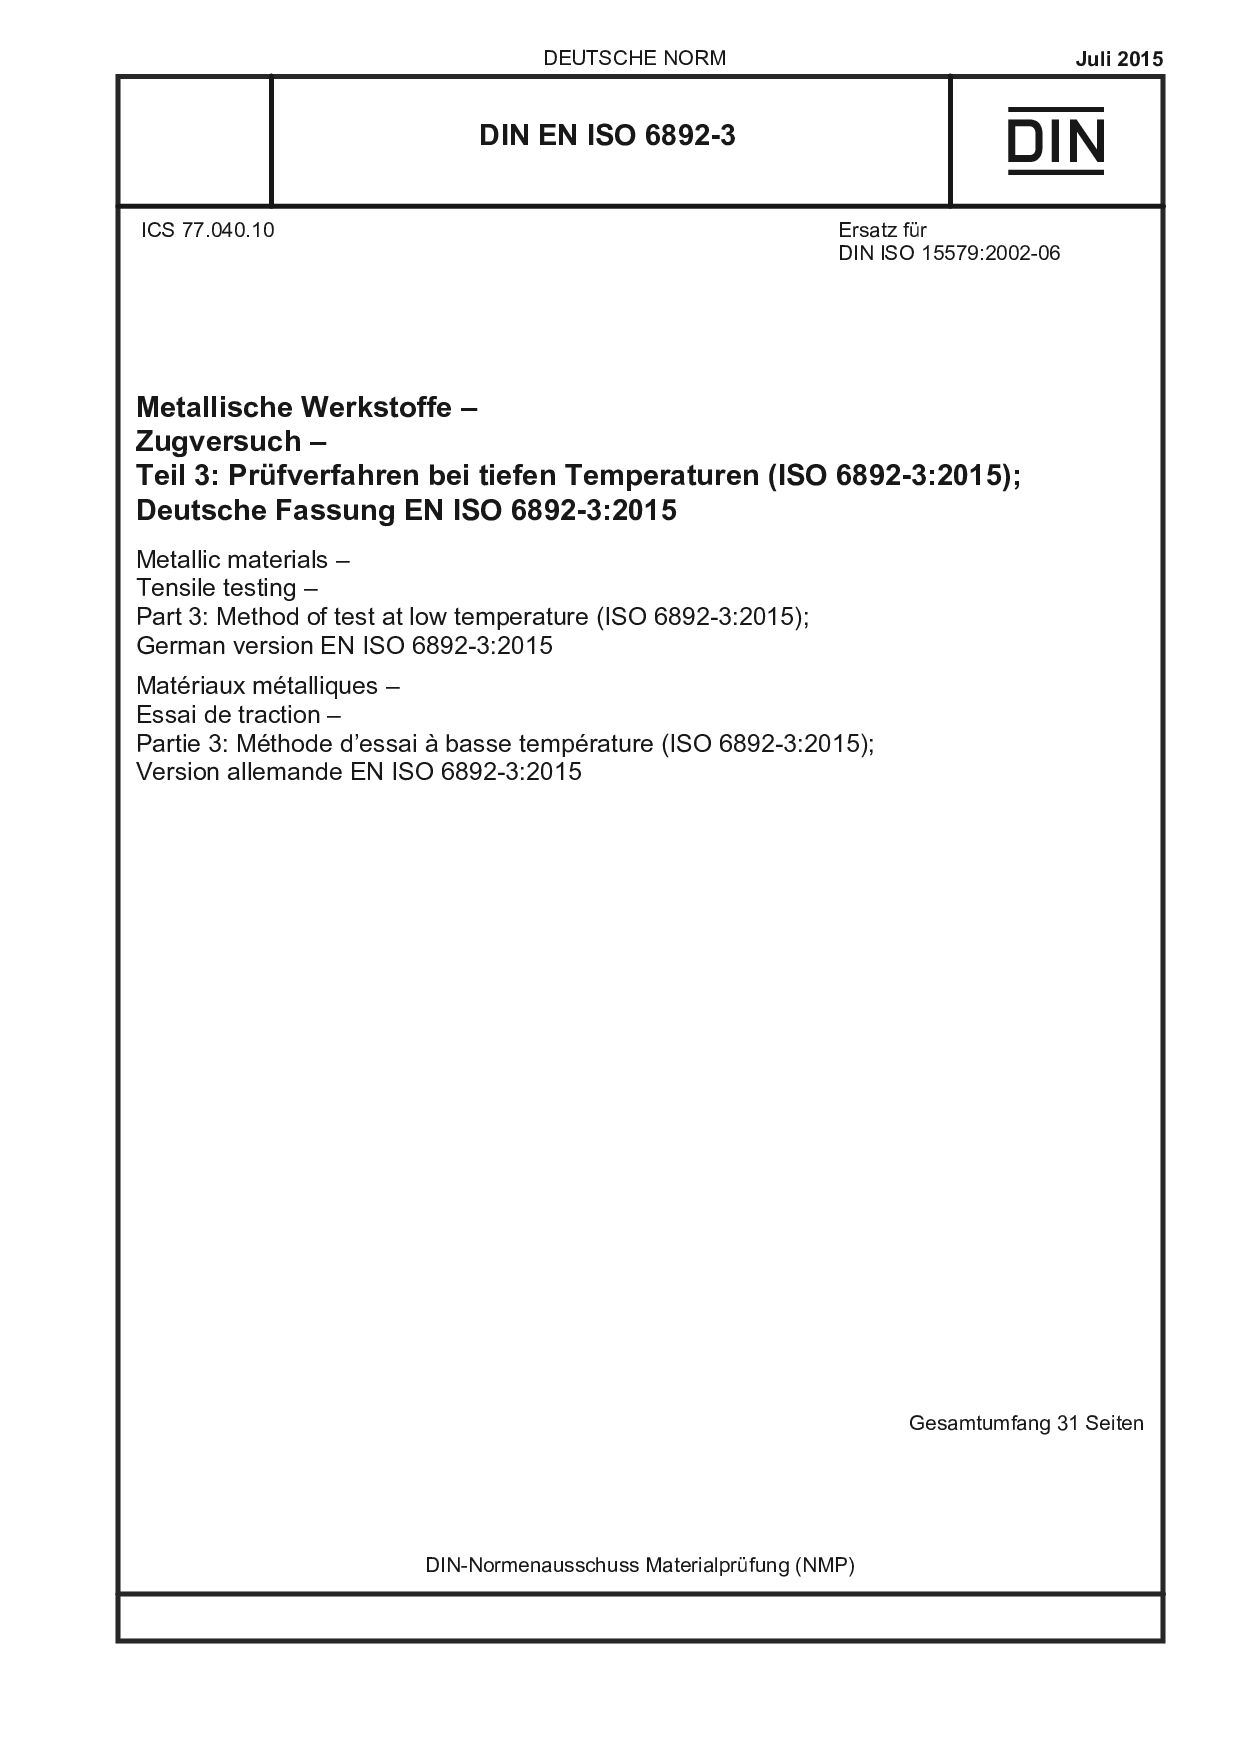 DIN EN ISO 6892-3:2015封面图